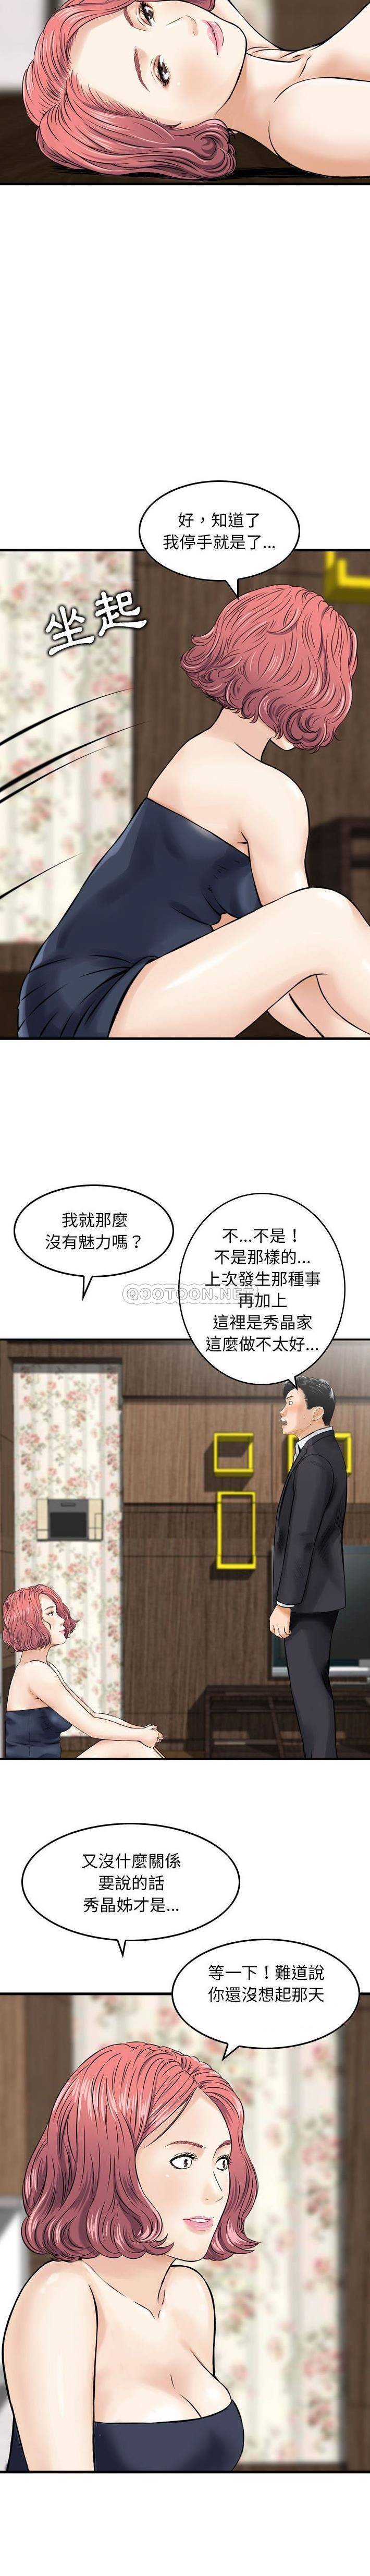 韩国污漫画 金錢的魅力 第14话 6